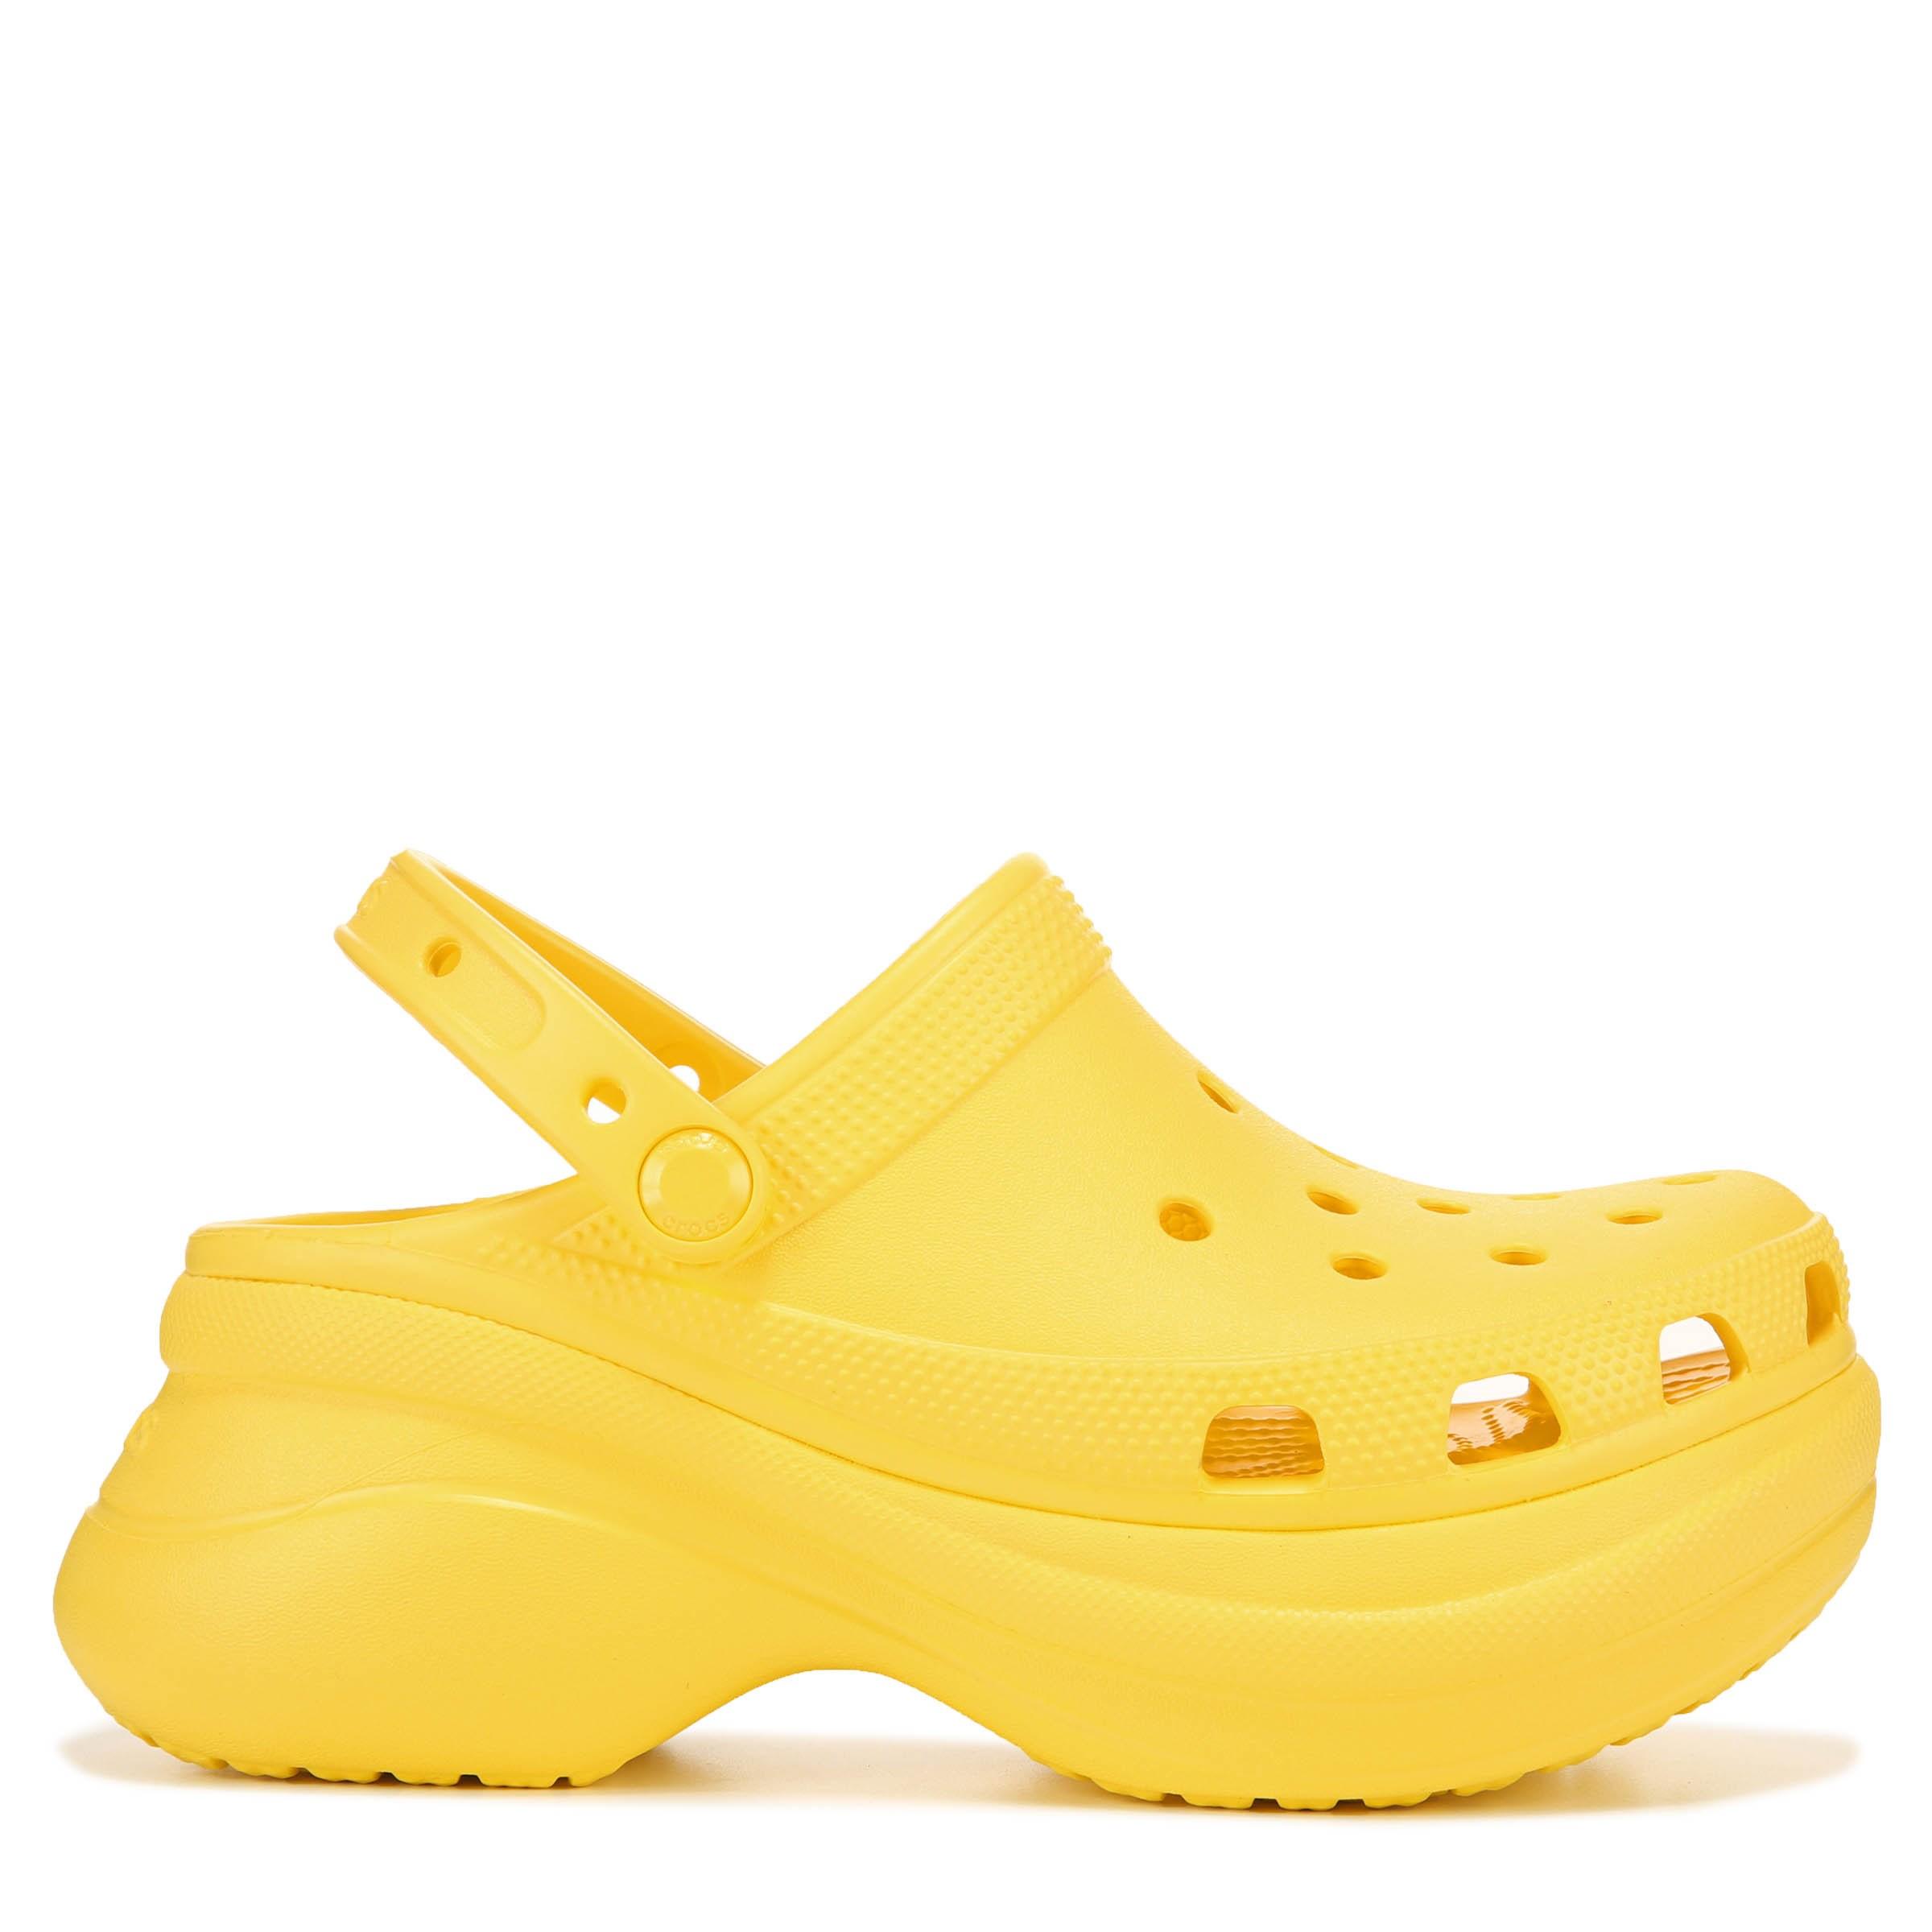 platform yellow crocs